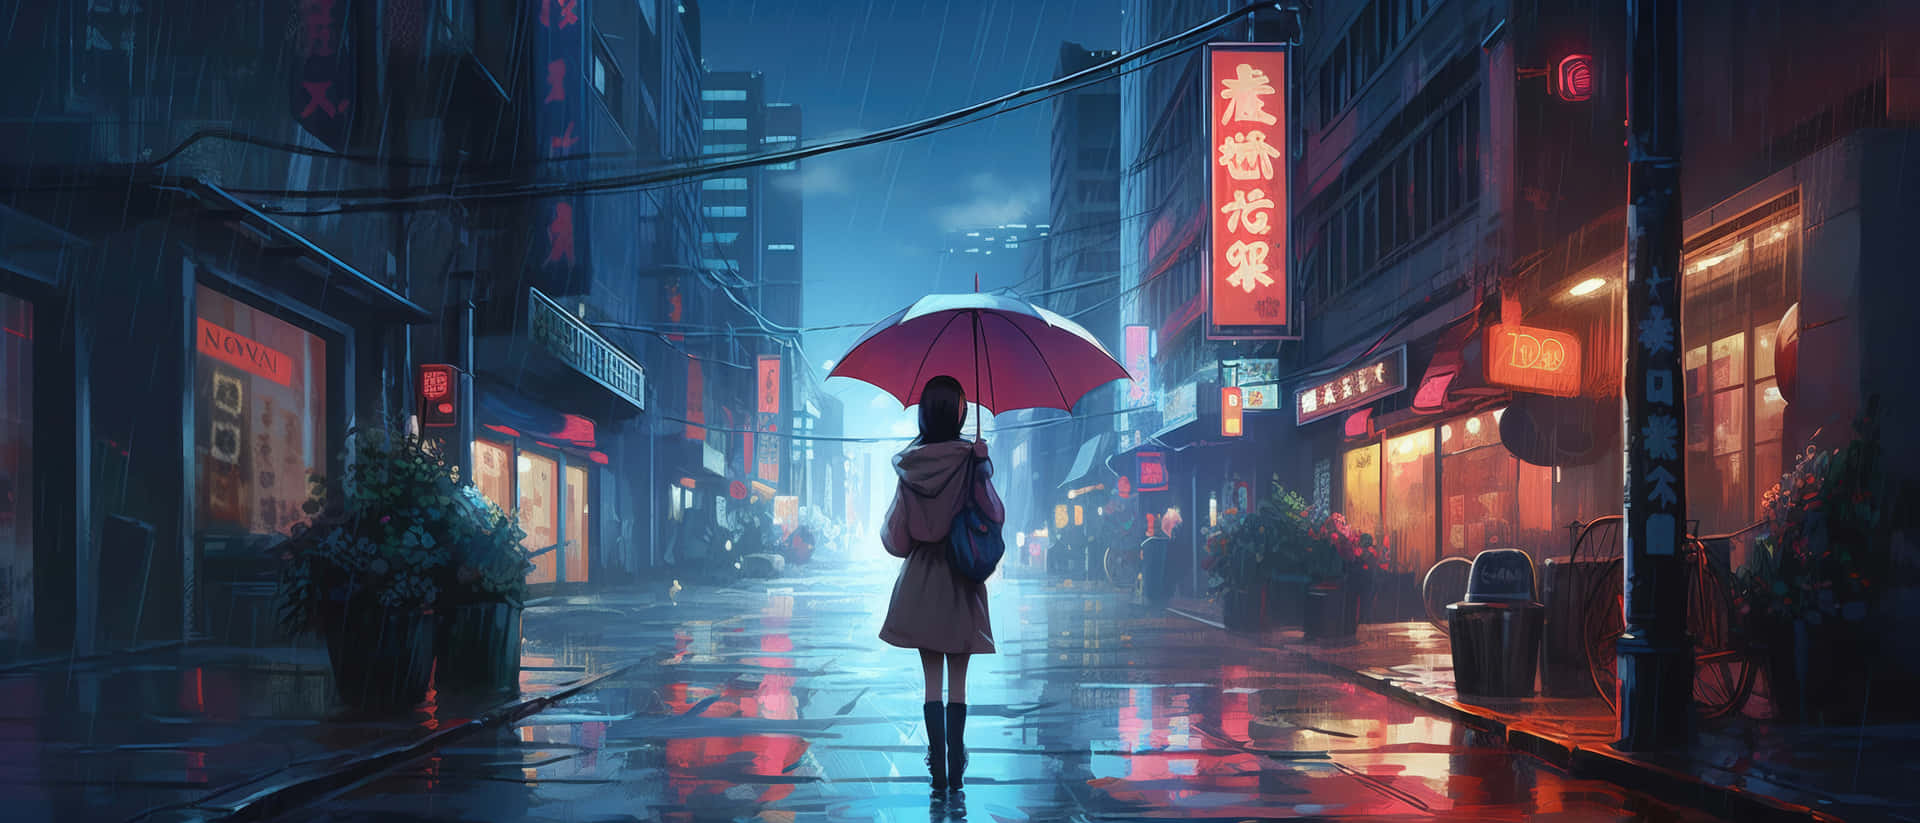 Rainy Night Cityscapewith Umbrella